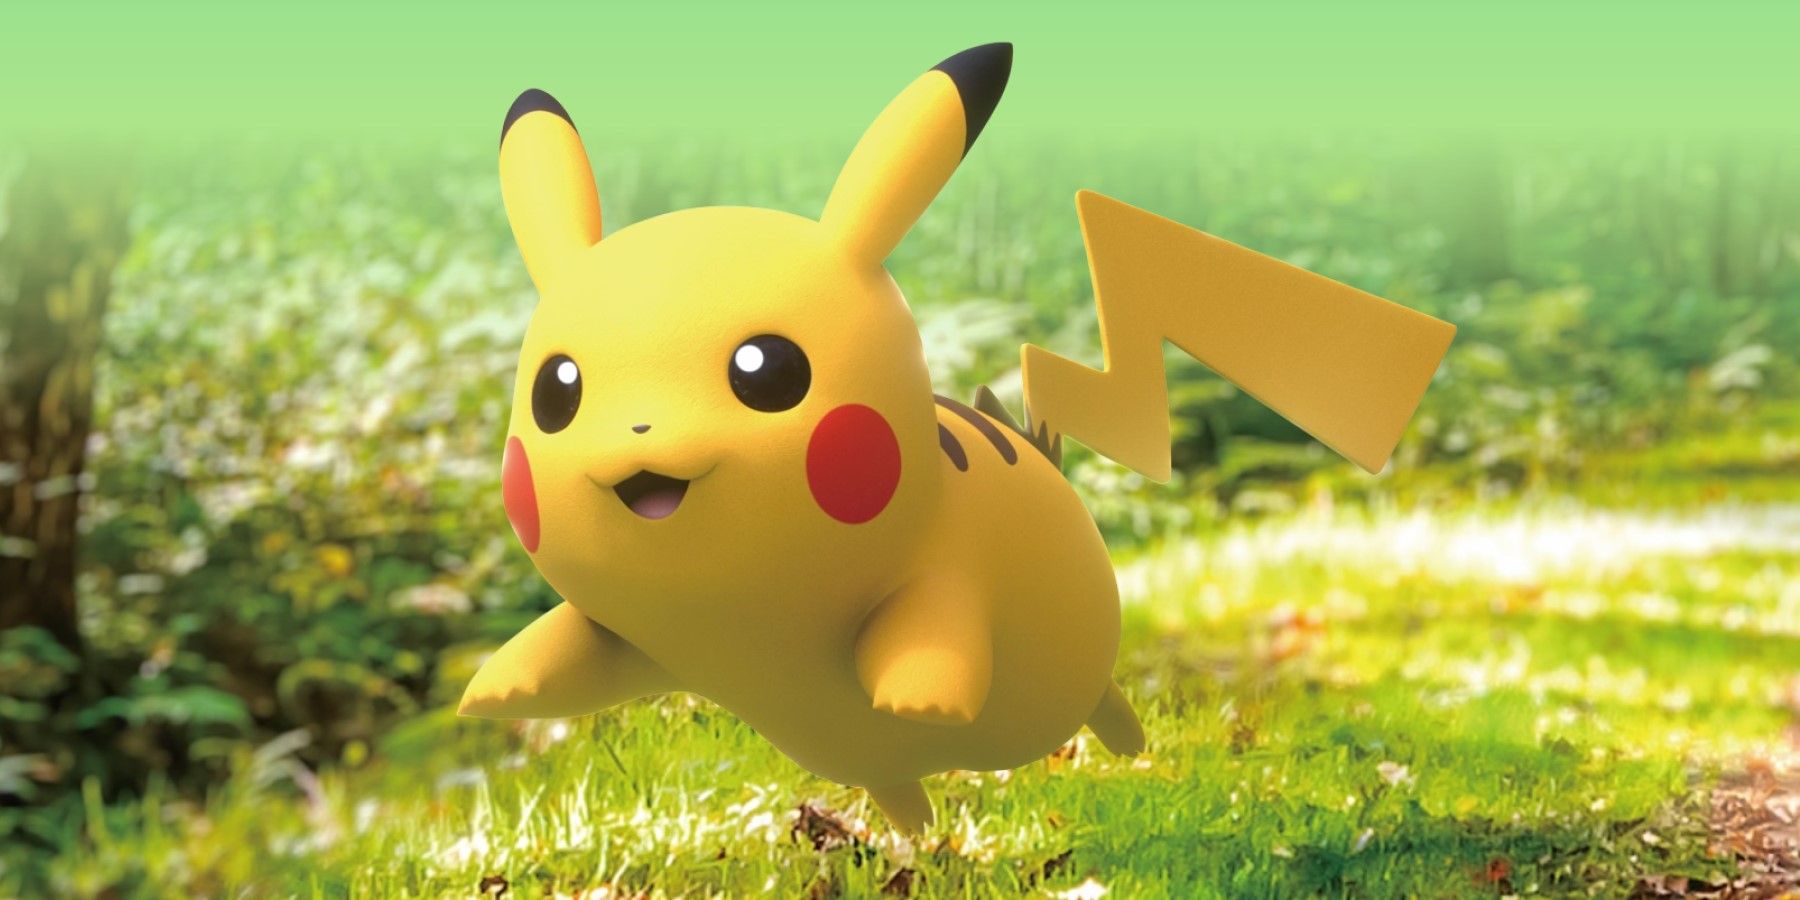 Tri ân người chơi, công ty Pokemon ra mắt phiên bản loa Bluetooth Pikachu độc nhất vô nhị - Ảnh 1.